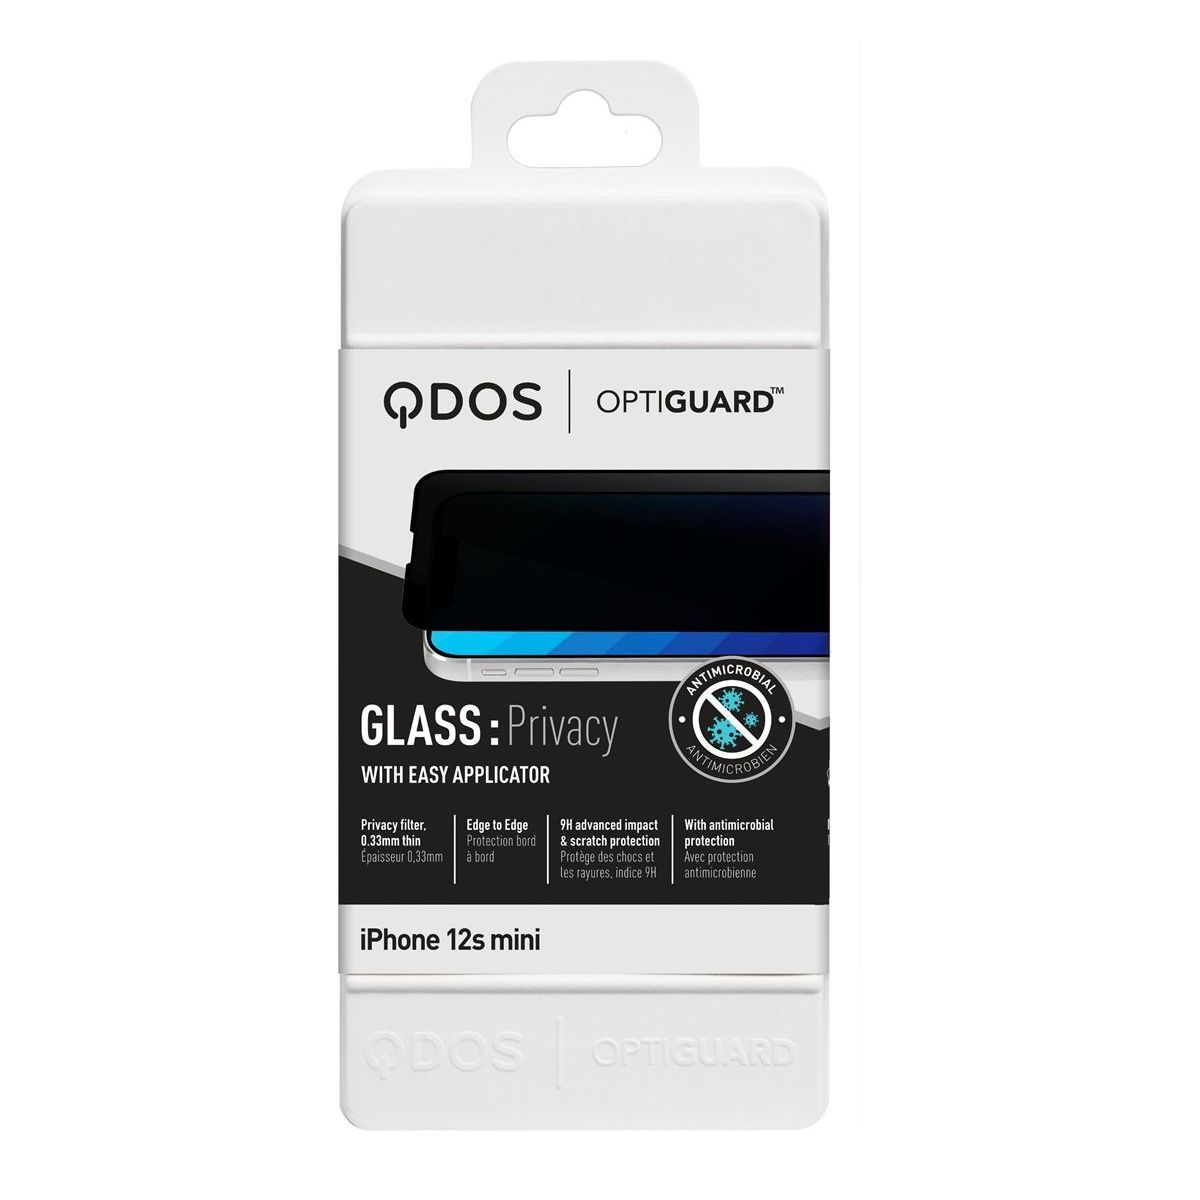 Vitre Protection écran verre Trempé & Filtre confidentialité - iPhone 11 Pro Max